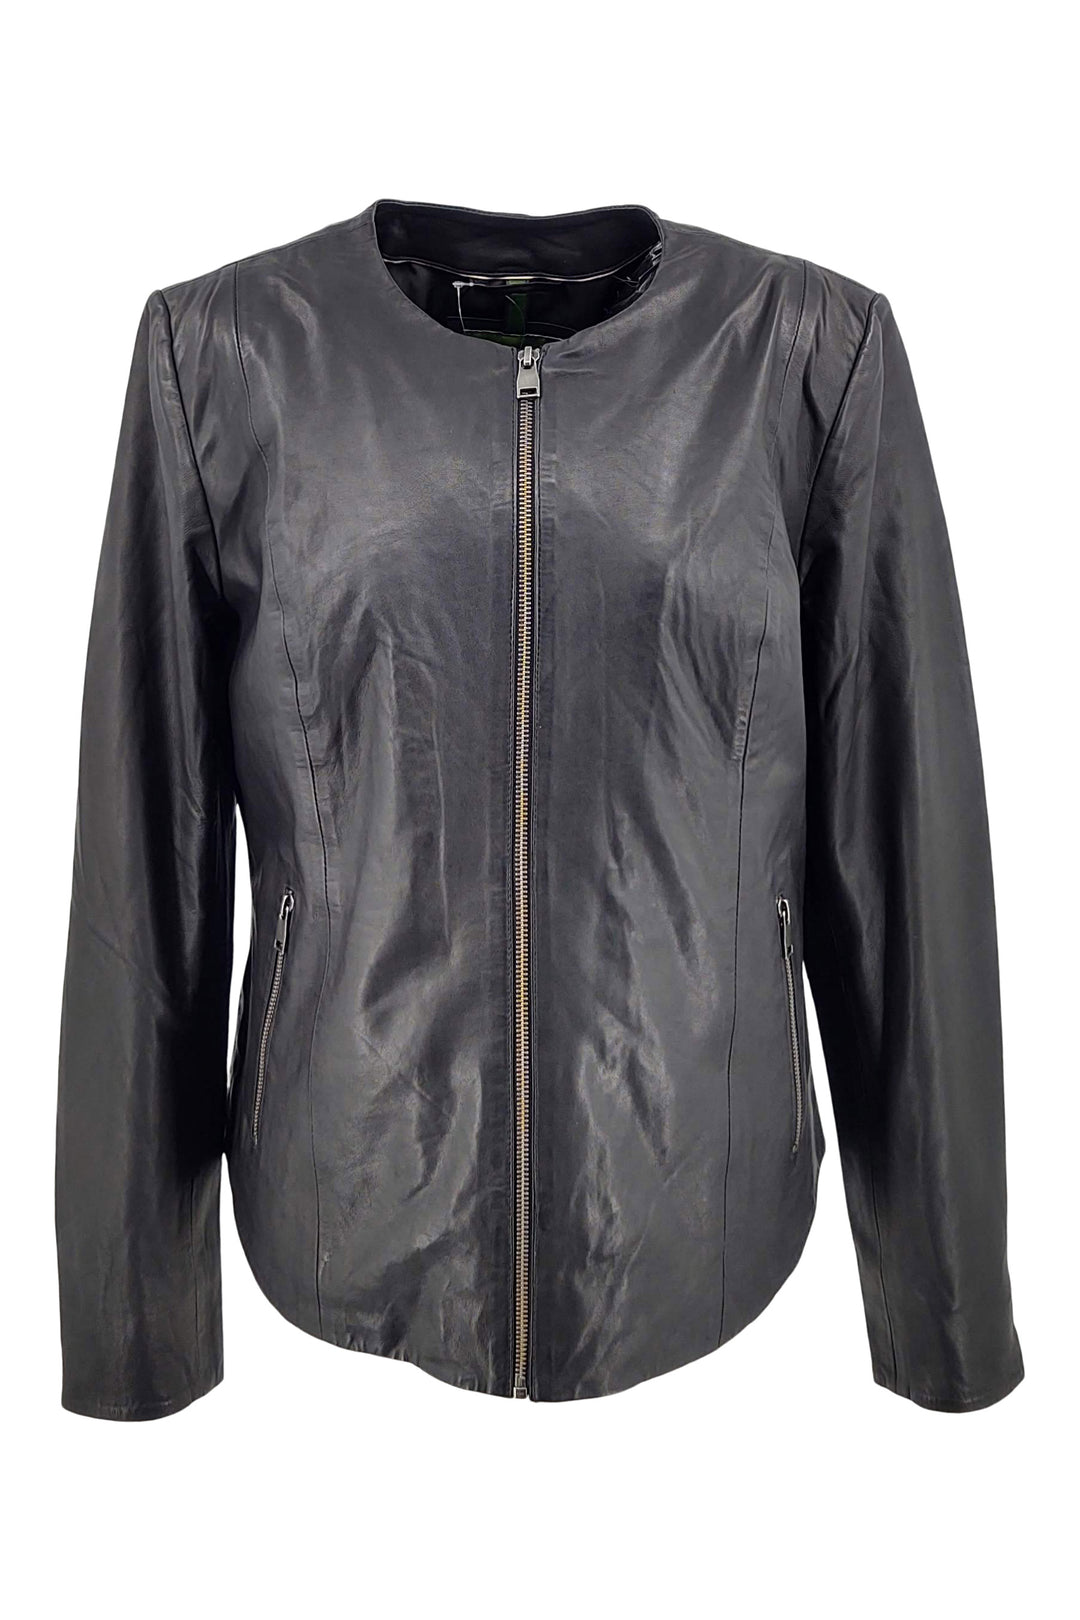 PP 108 - Comfort - Lamb Malli Leather - Women - Black / Læder Skinds Jakke - Levinsky - Kvinde | STAMPE PELS